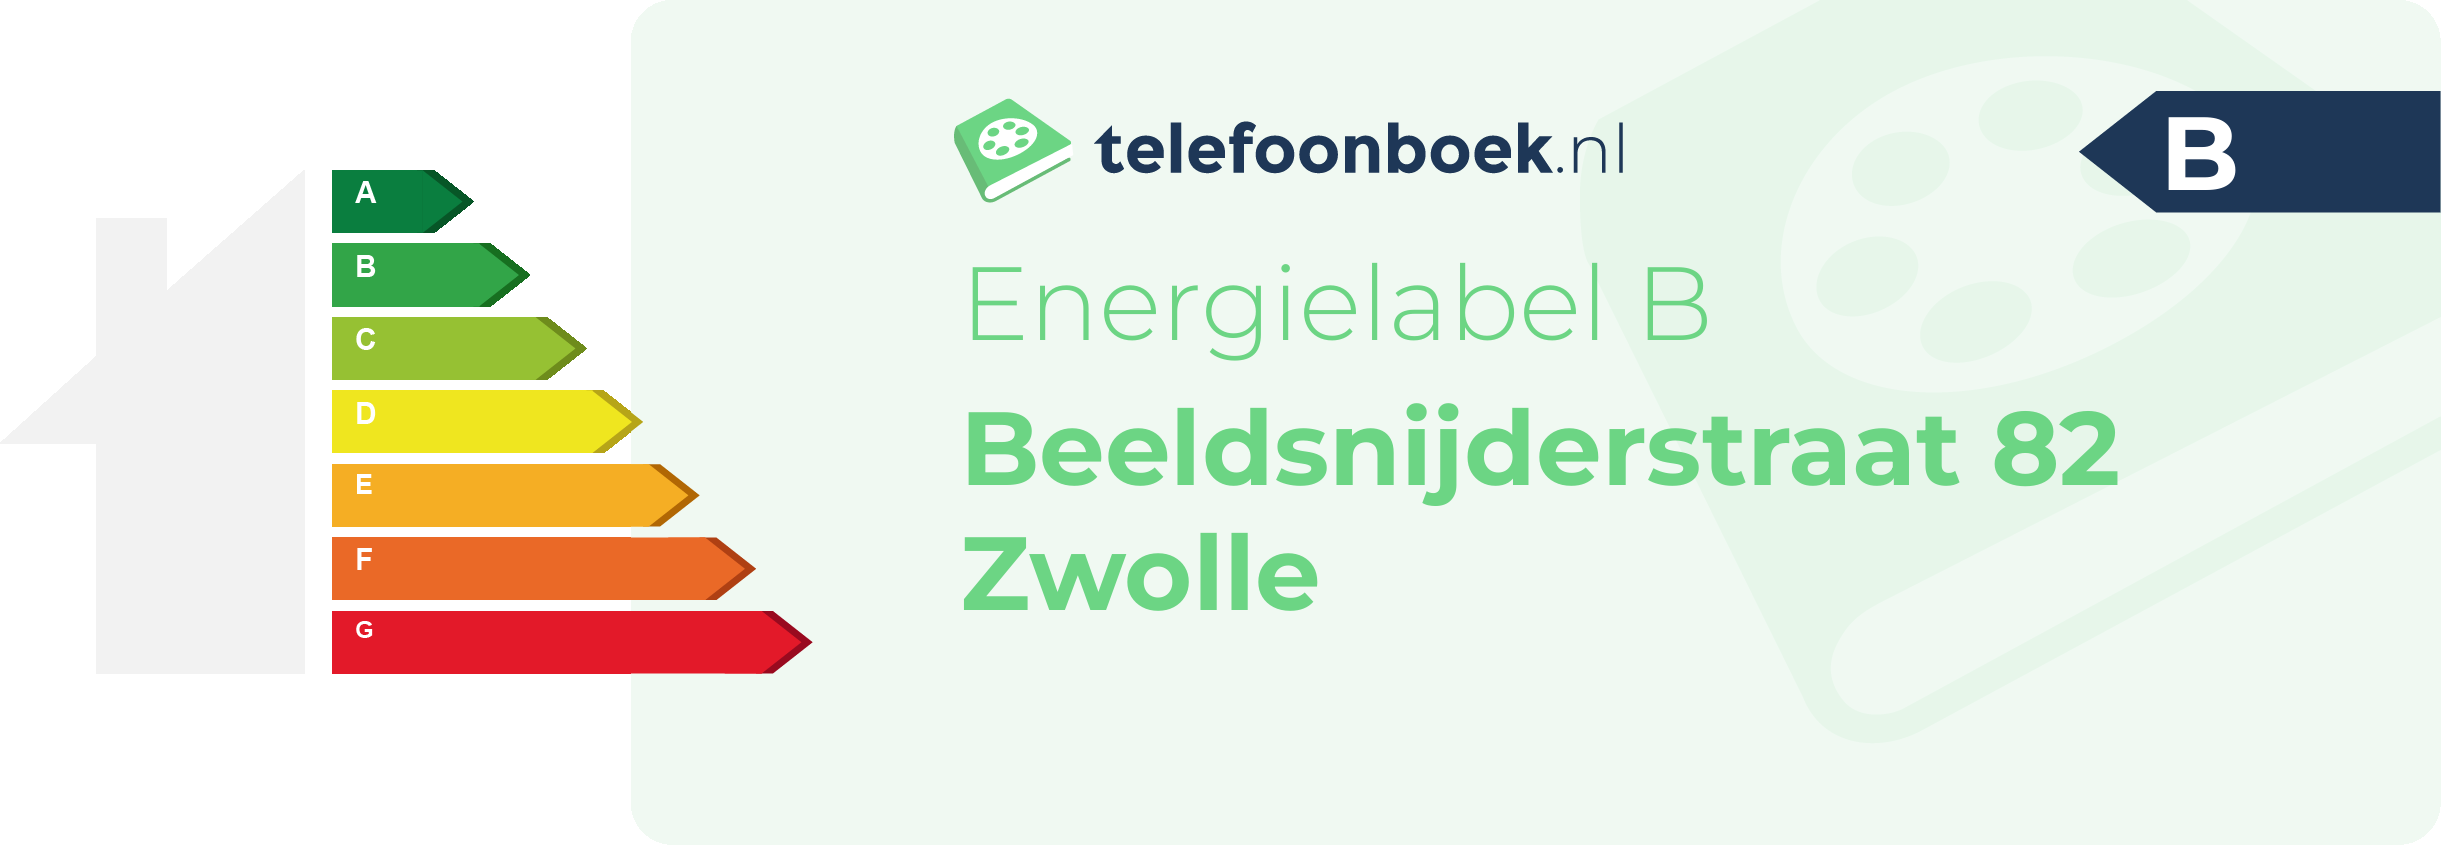 Energielabel Beeldsnijderstraat 82 Zwolle